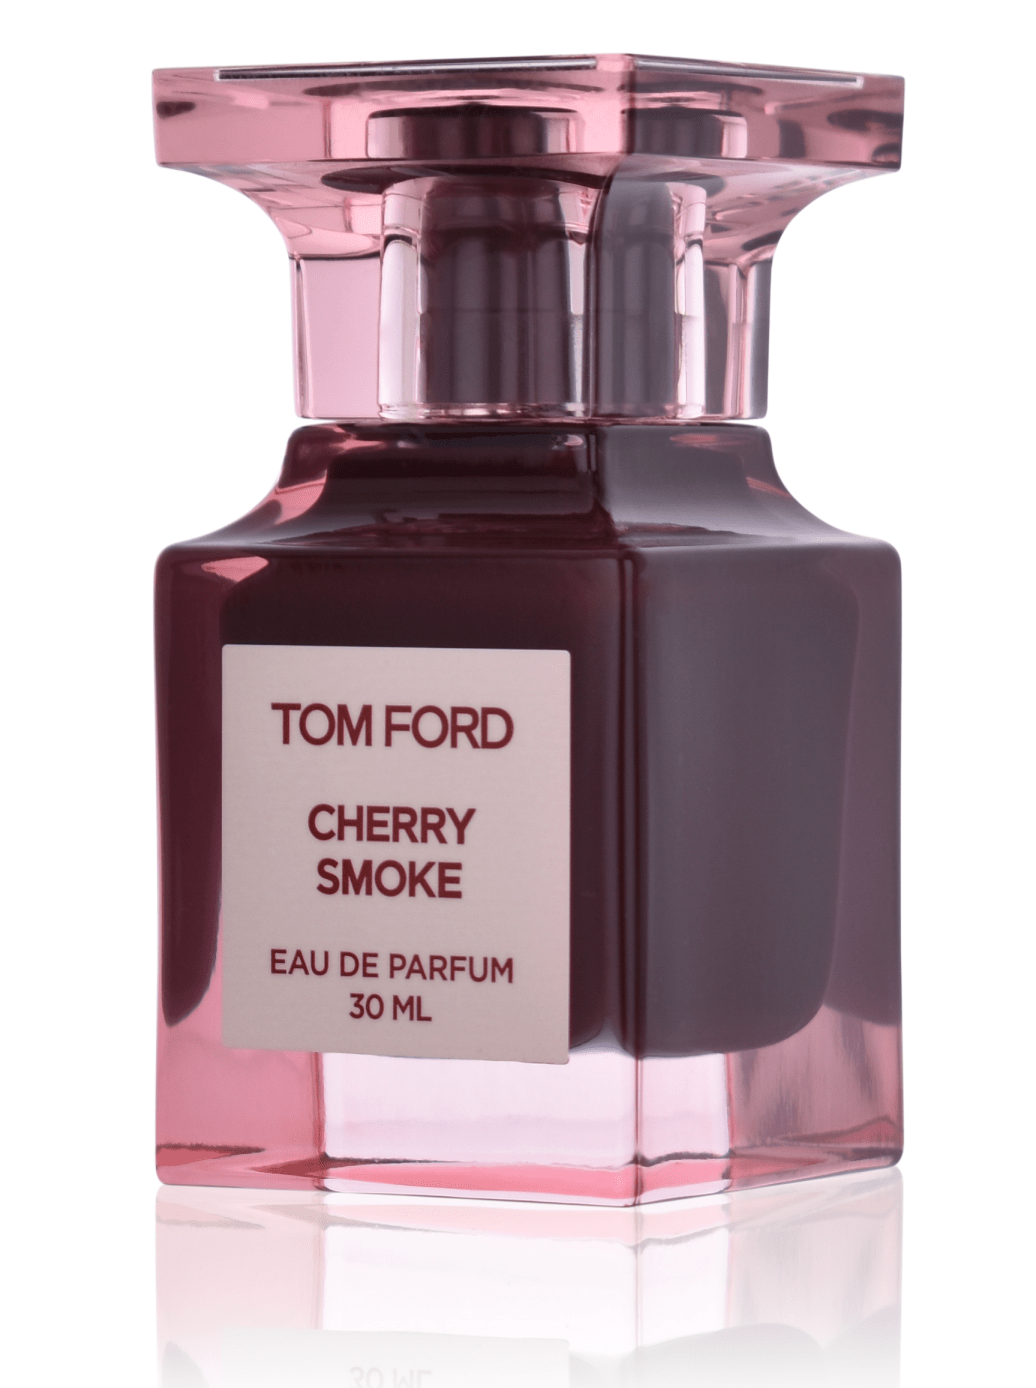 Tom Ford Cherry Smoke 30 ml Eau de Parfum 